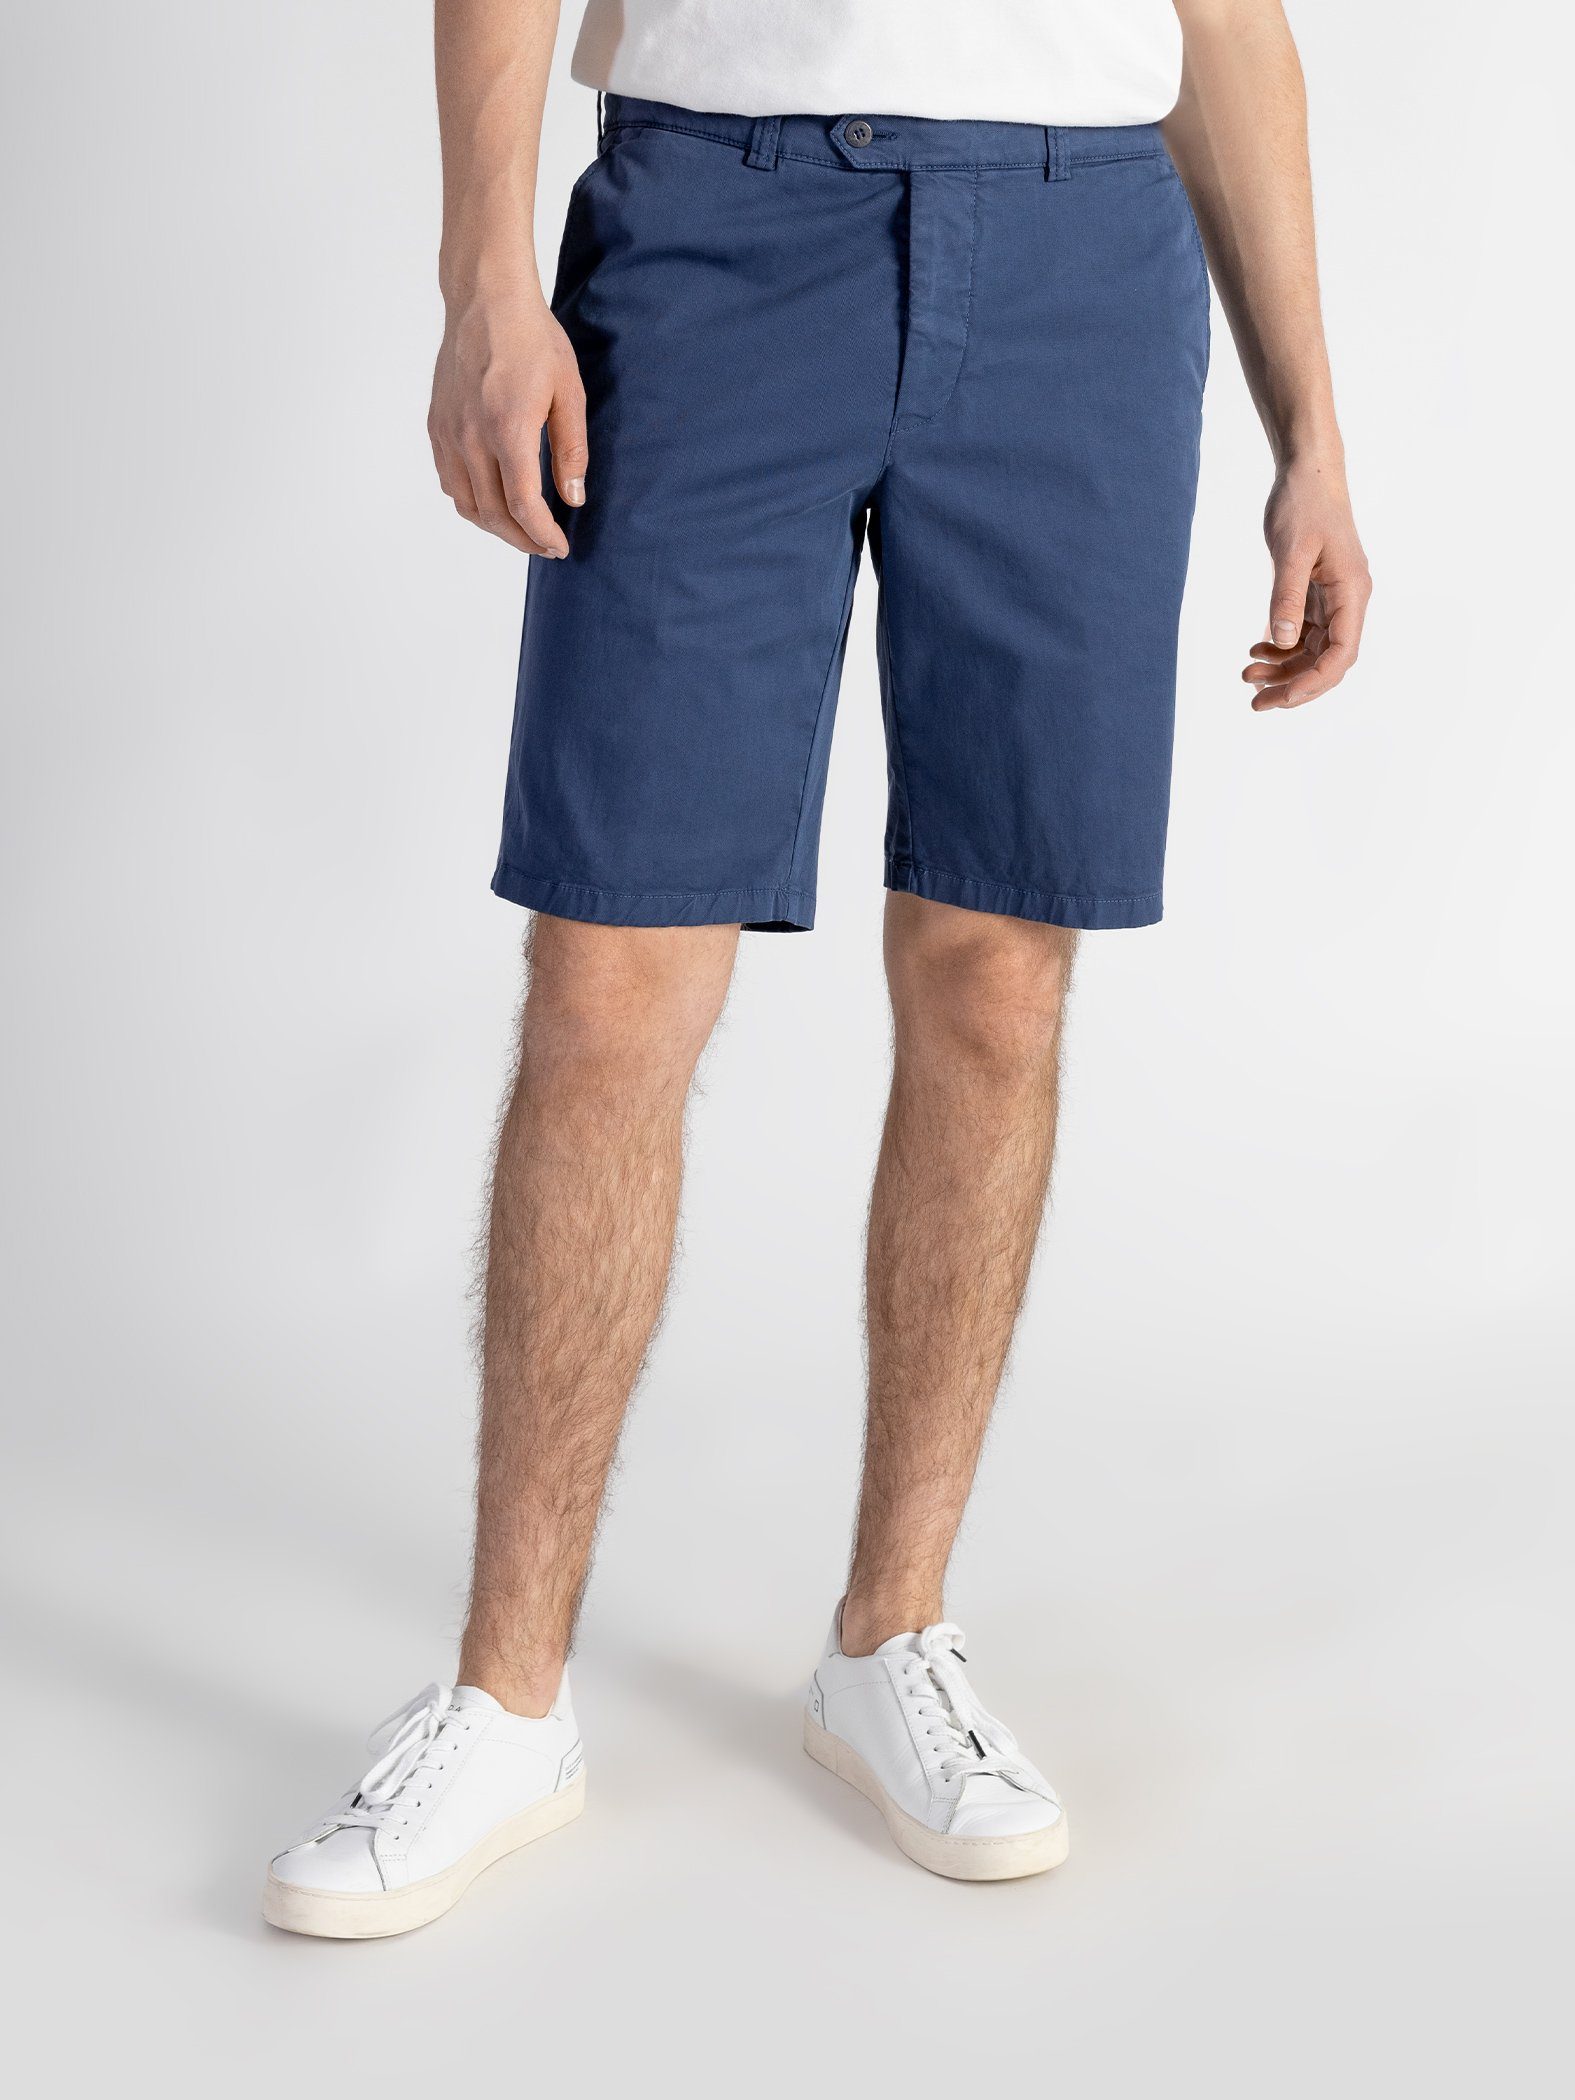 TwoMates Shorts Shorts mit elastischem Bund, Farbauswahl, GOTS-zertifiziert Blau